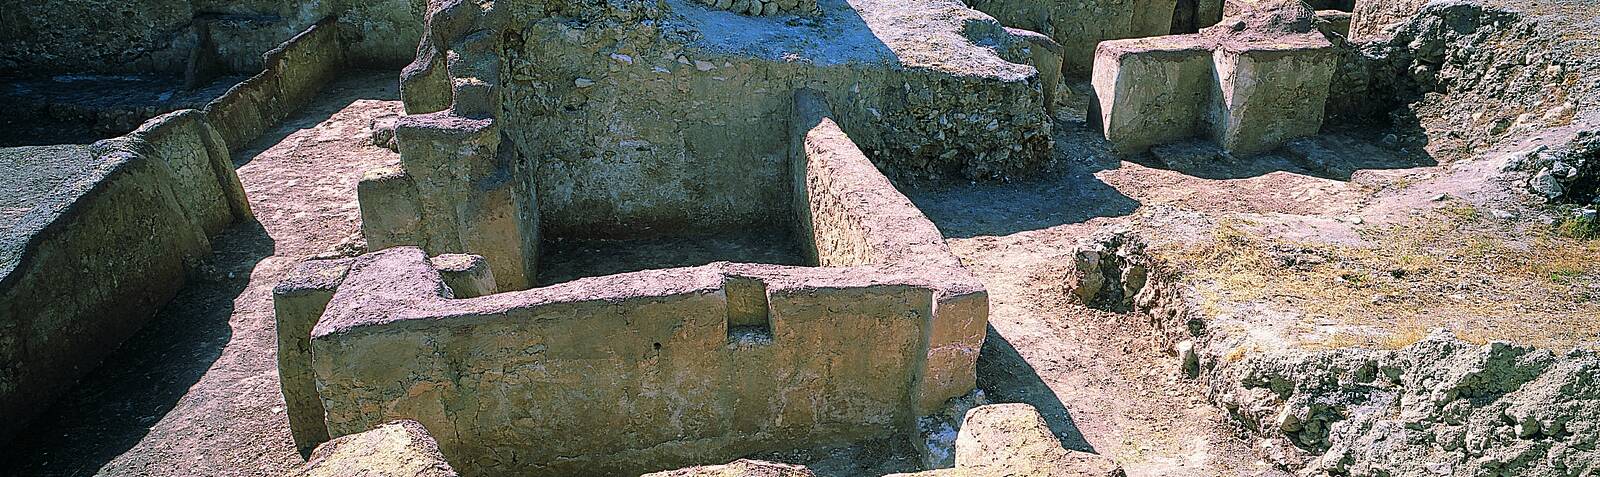 La ciudad antigua de Seymareh